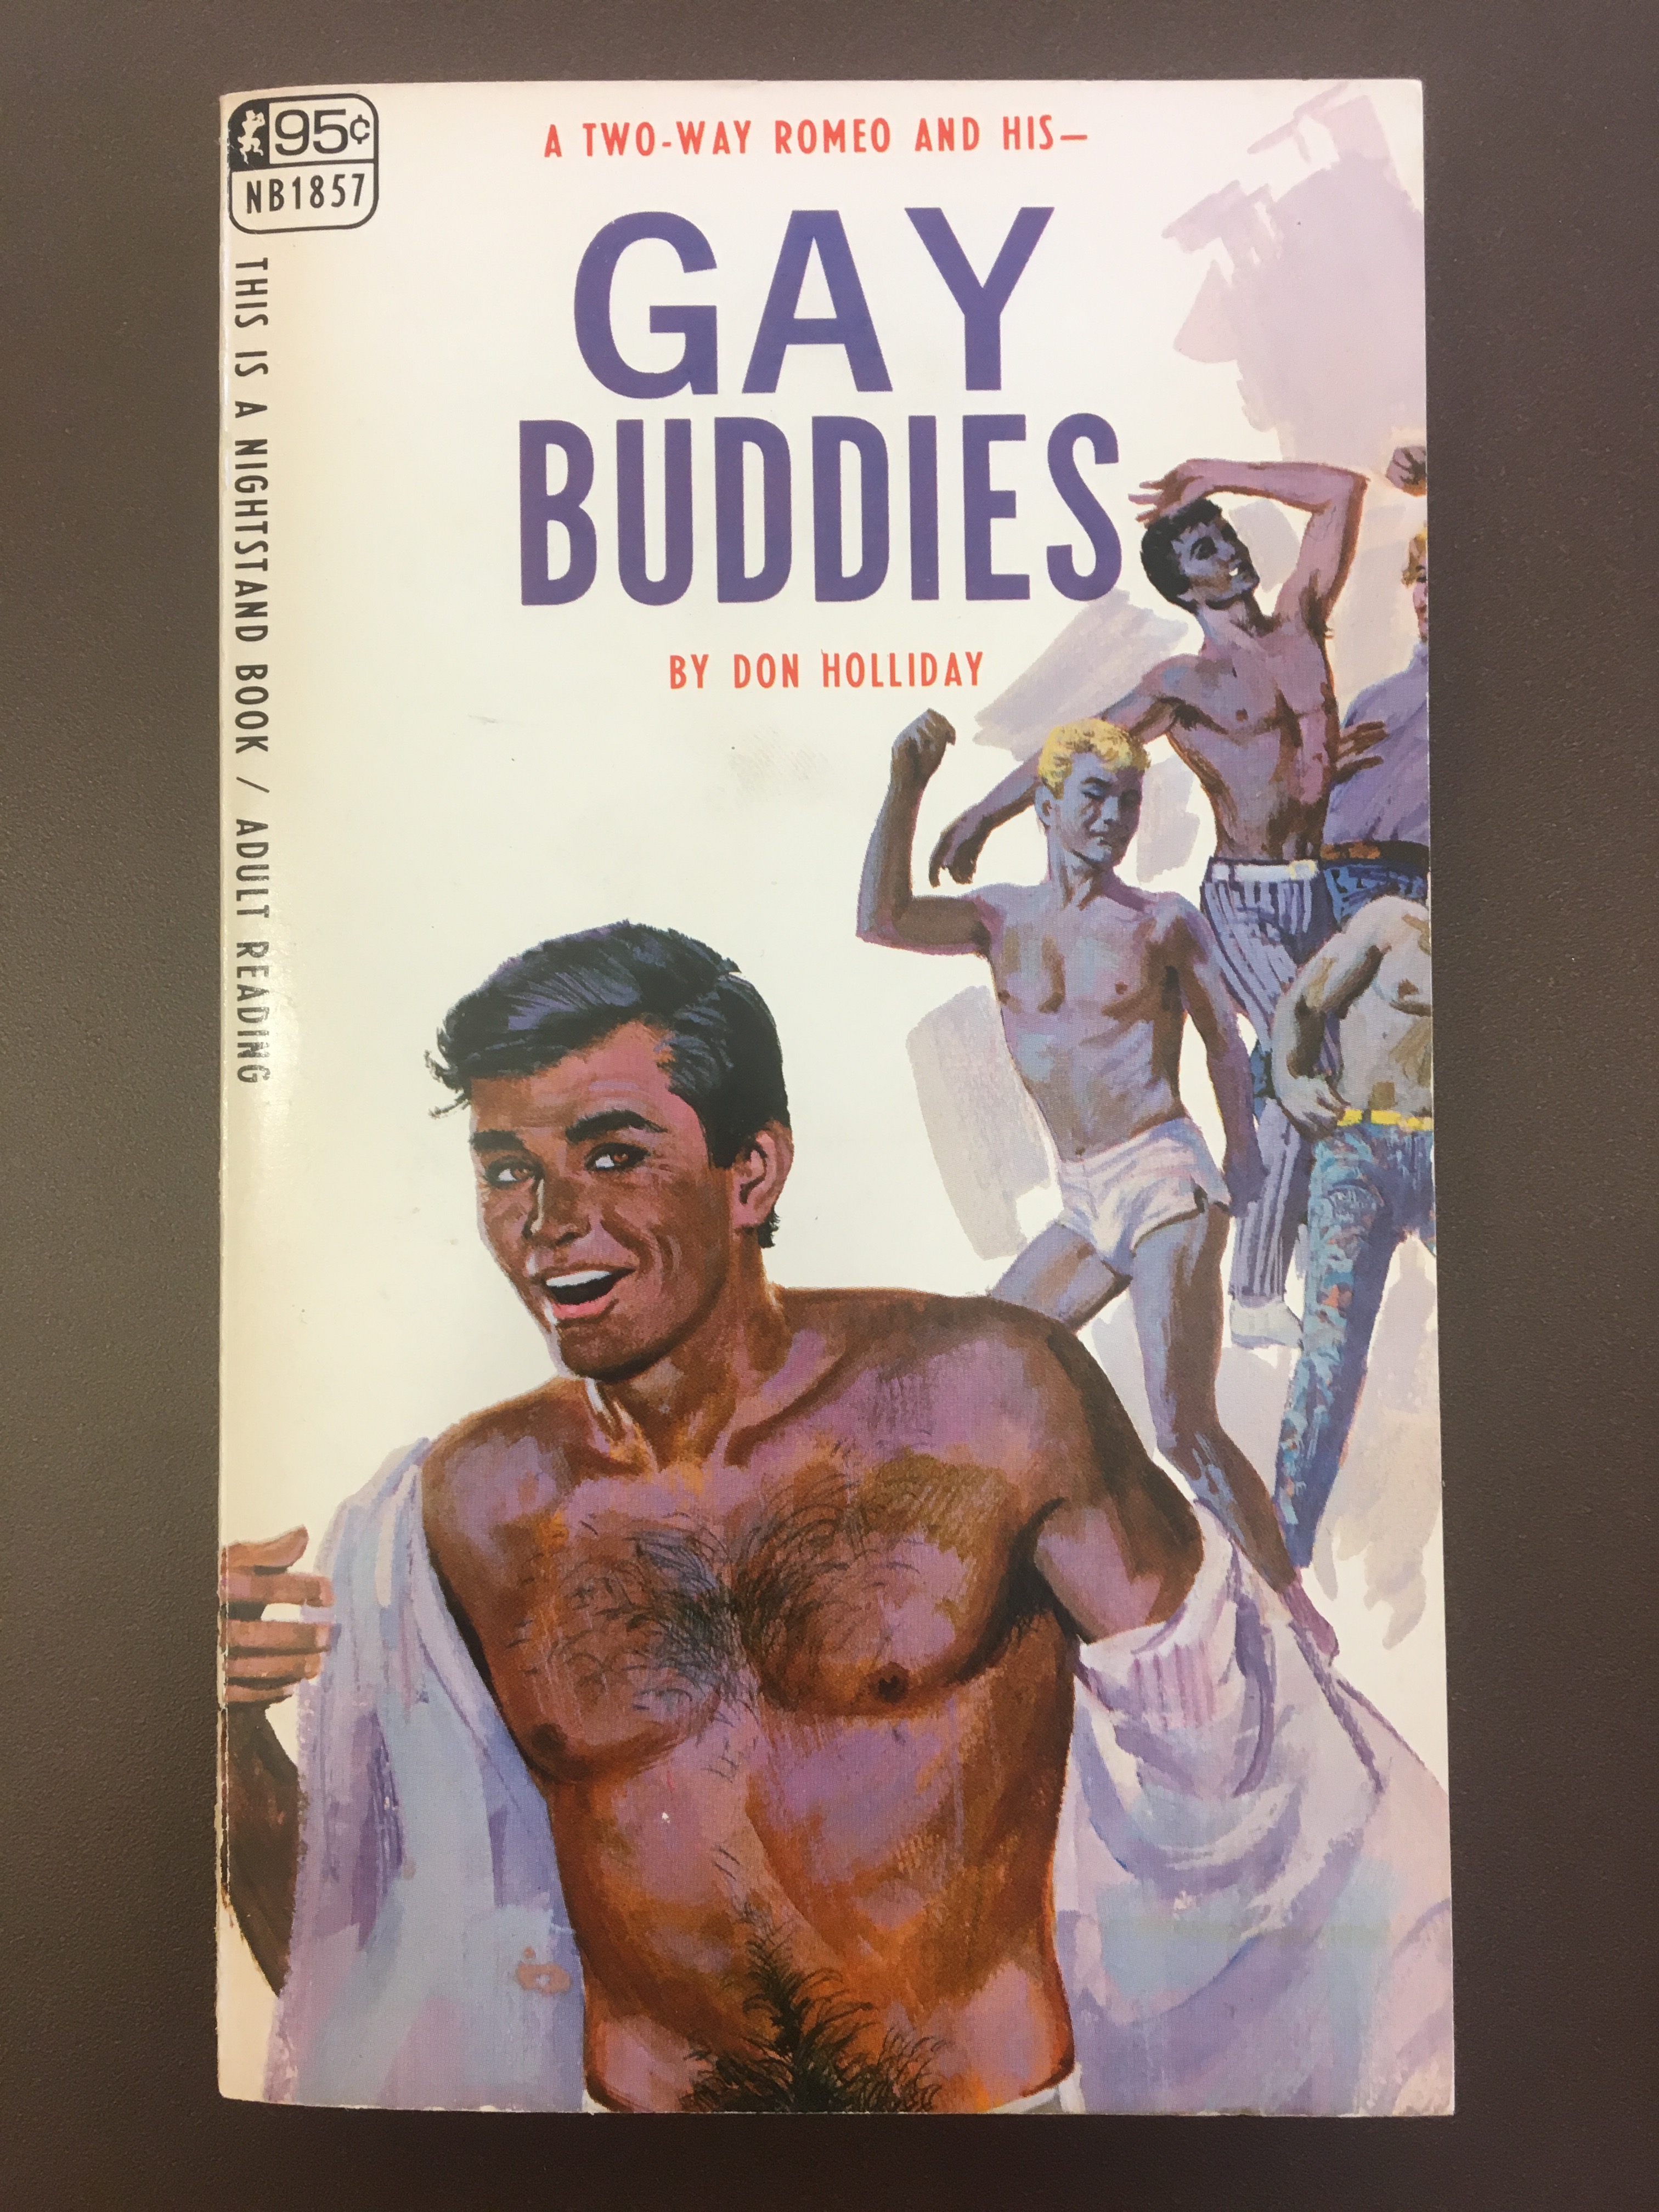 Erotic stories retro books